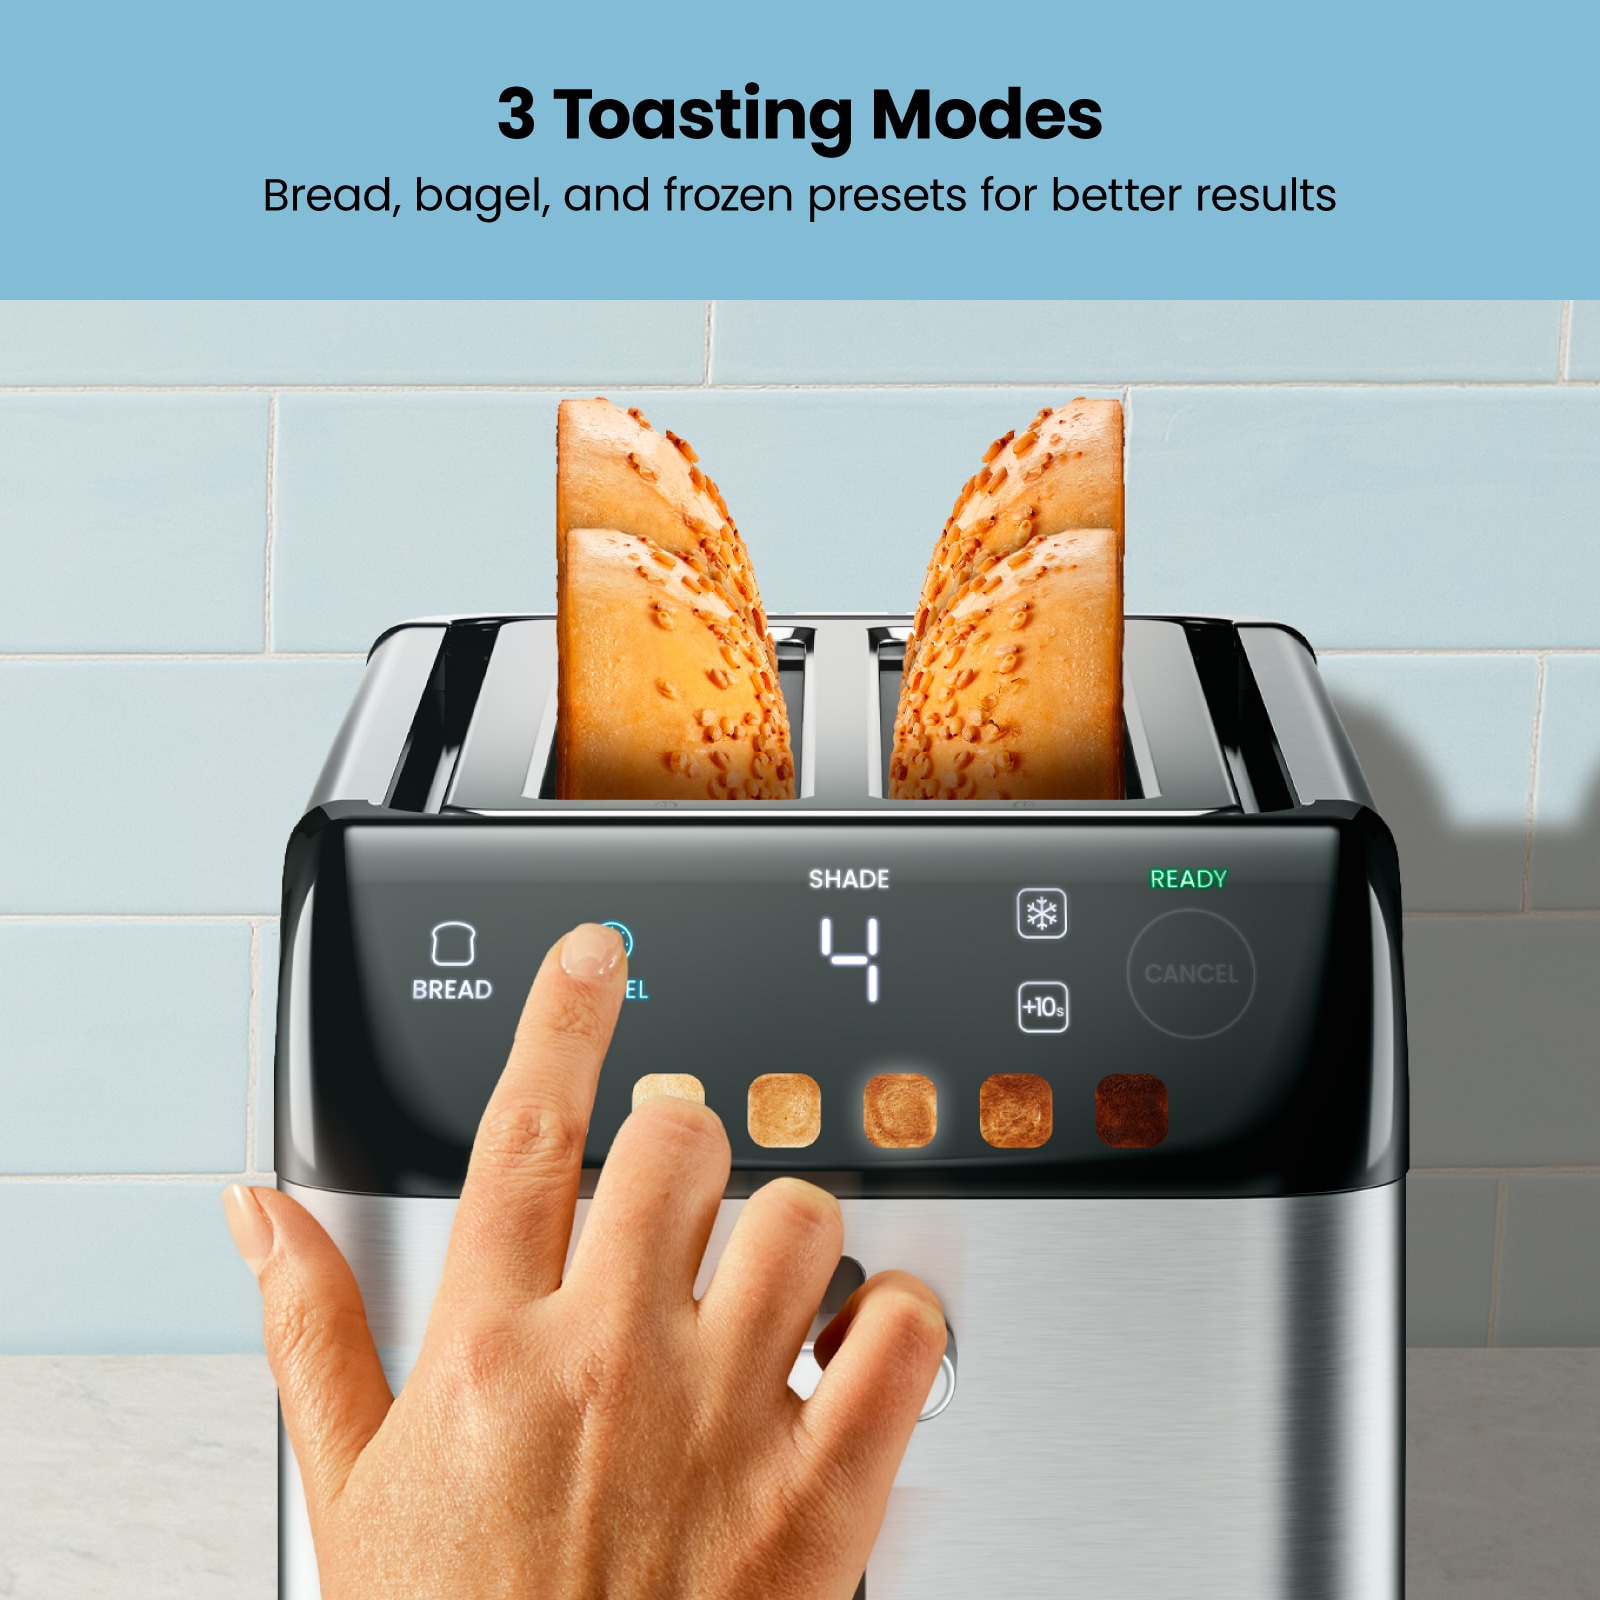 Chefman 2-Slice Stainless Steel 850-Watt Toaster in the Toasters